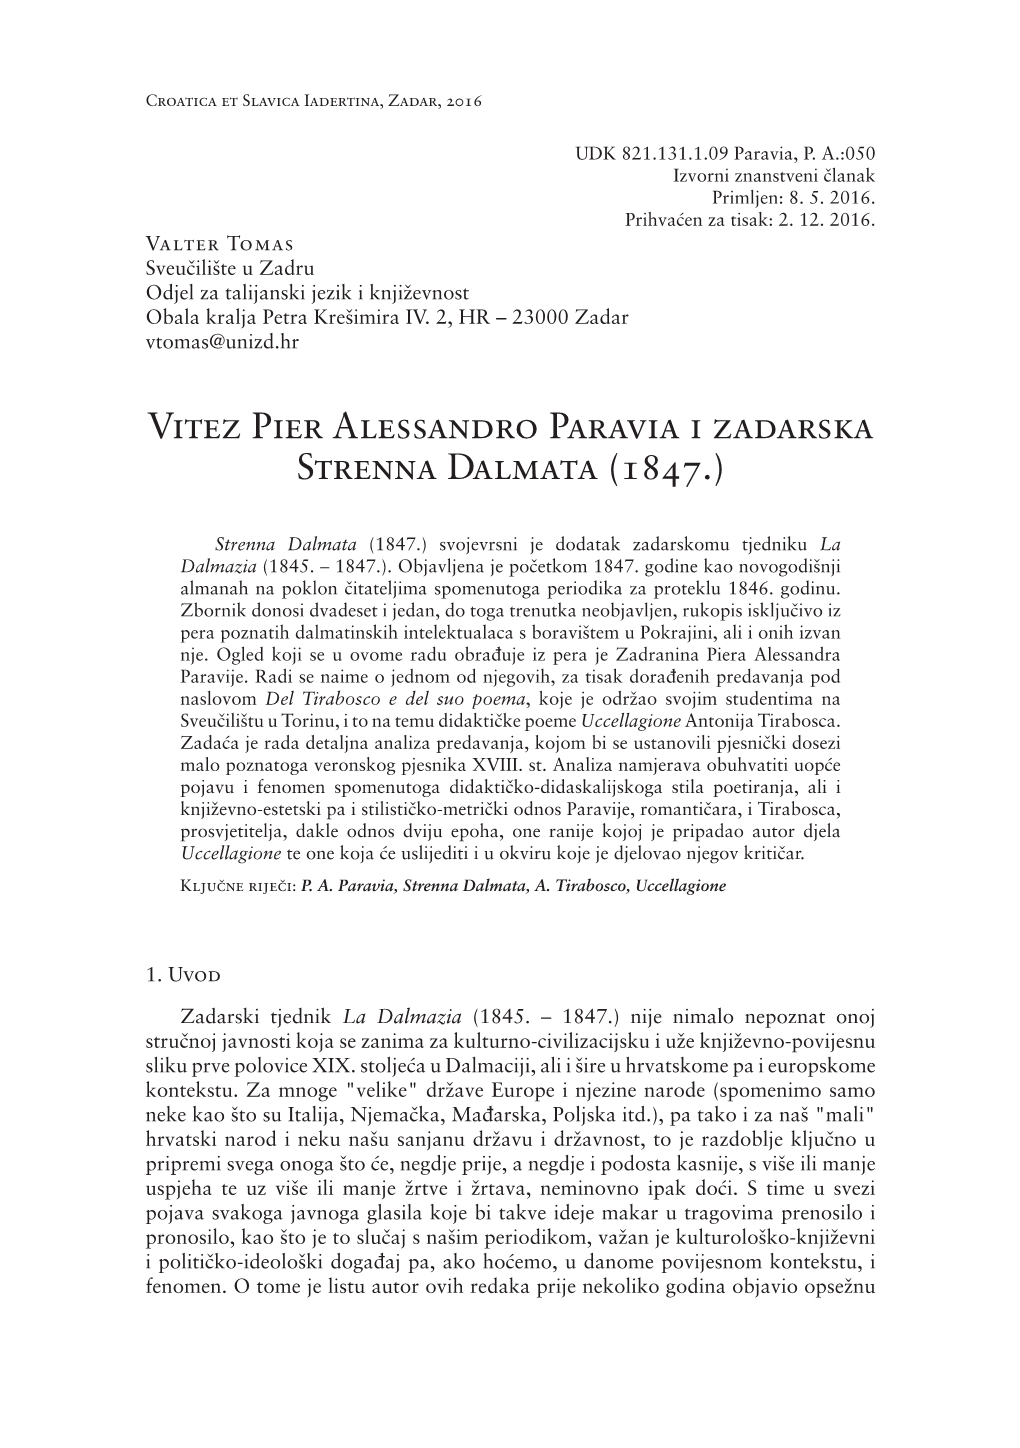 Vitez Pier Alessandro Paravia I Zadarska Strenna Dalmata (1847.)